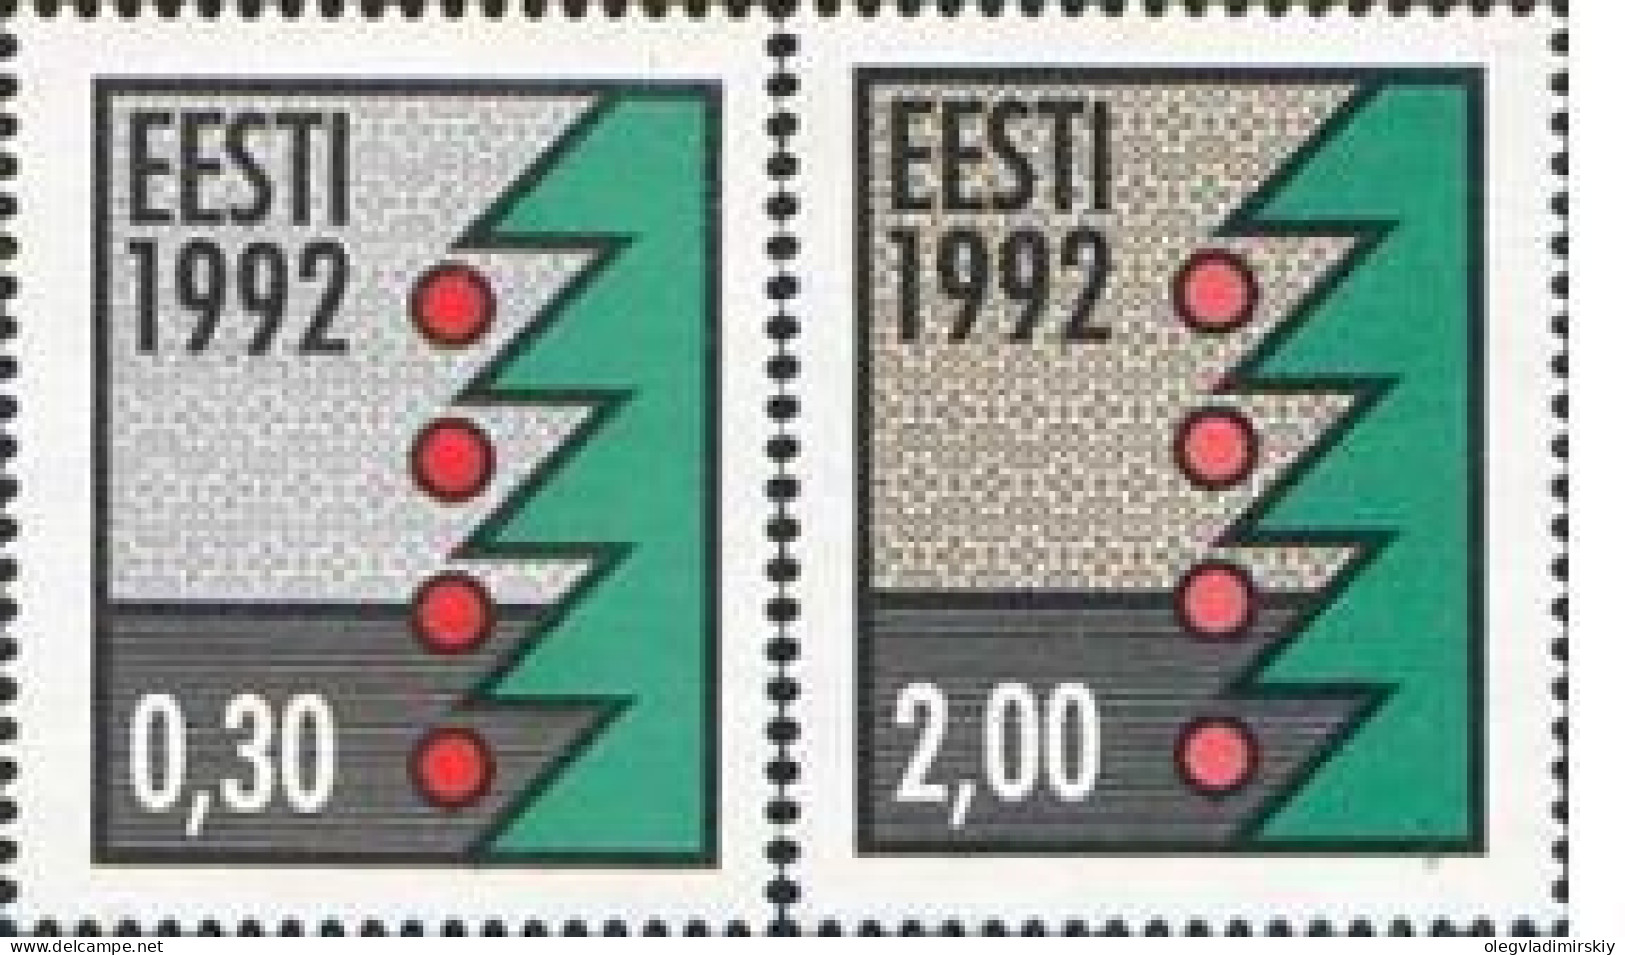 Estonia Estland Estonie 1992 Christmas (type B(y) - Phosphorescent Paper Michel # 195y-196y Set Of 2 Stamps MNH - Estonie